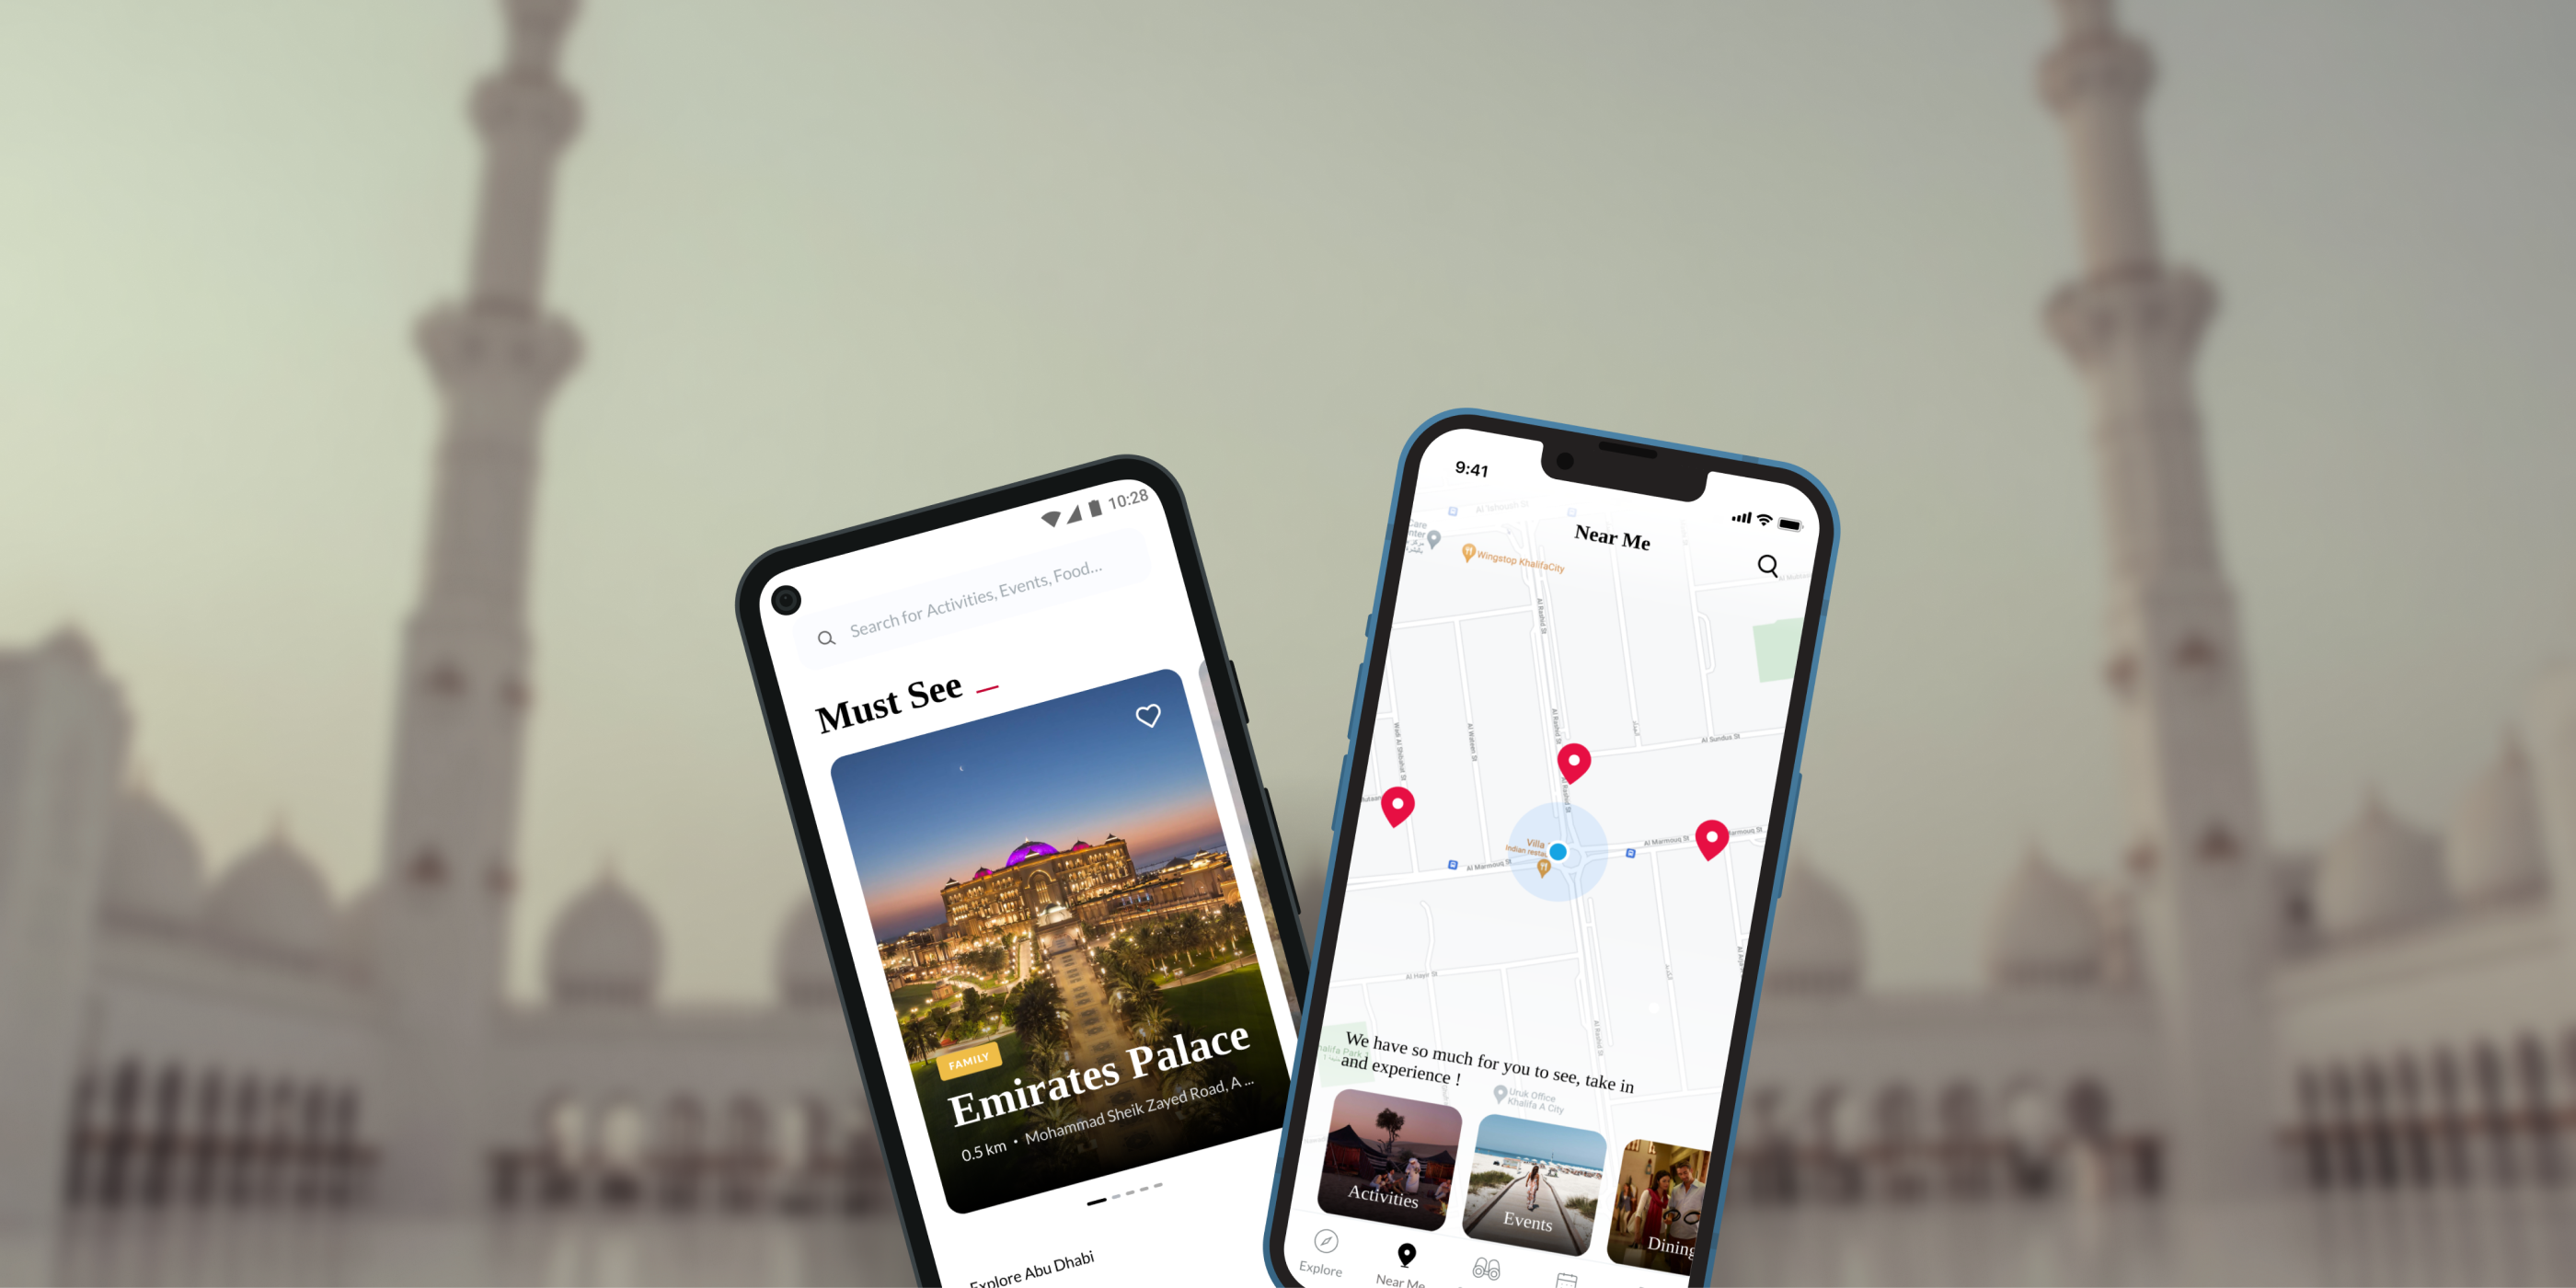 Visit Abu Dhabi Mobile app